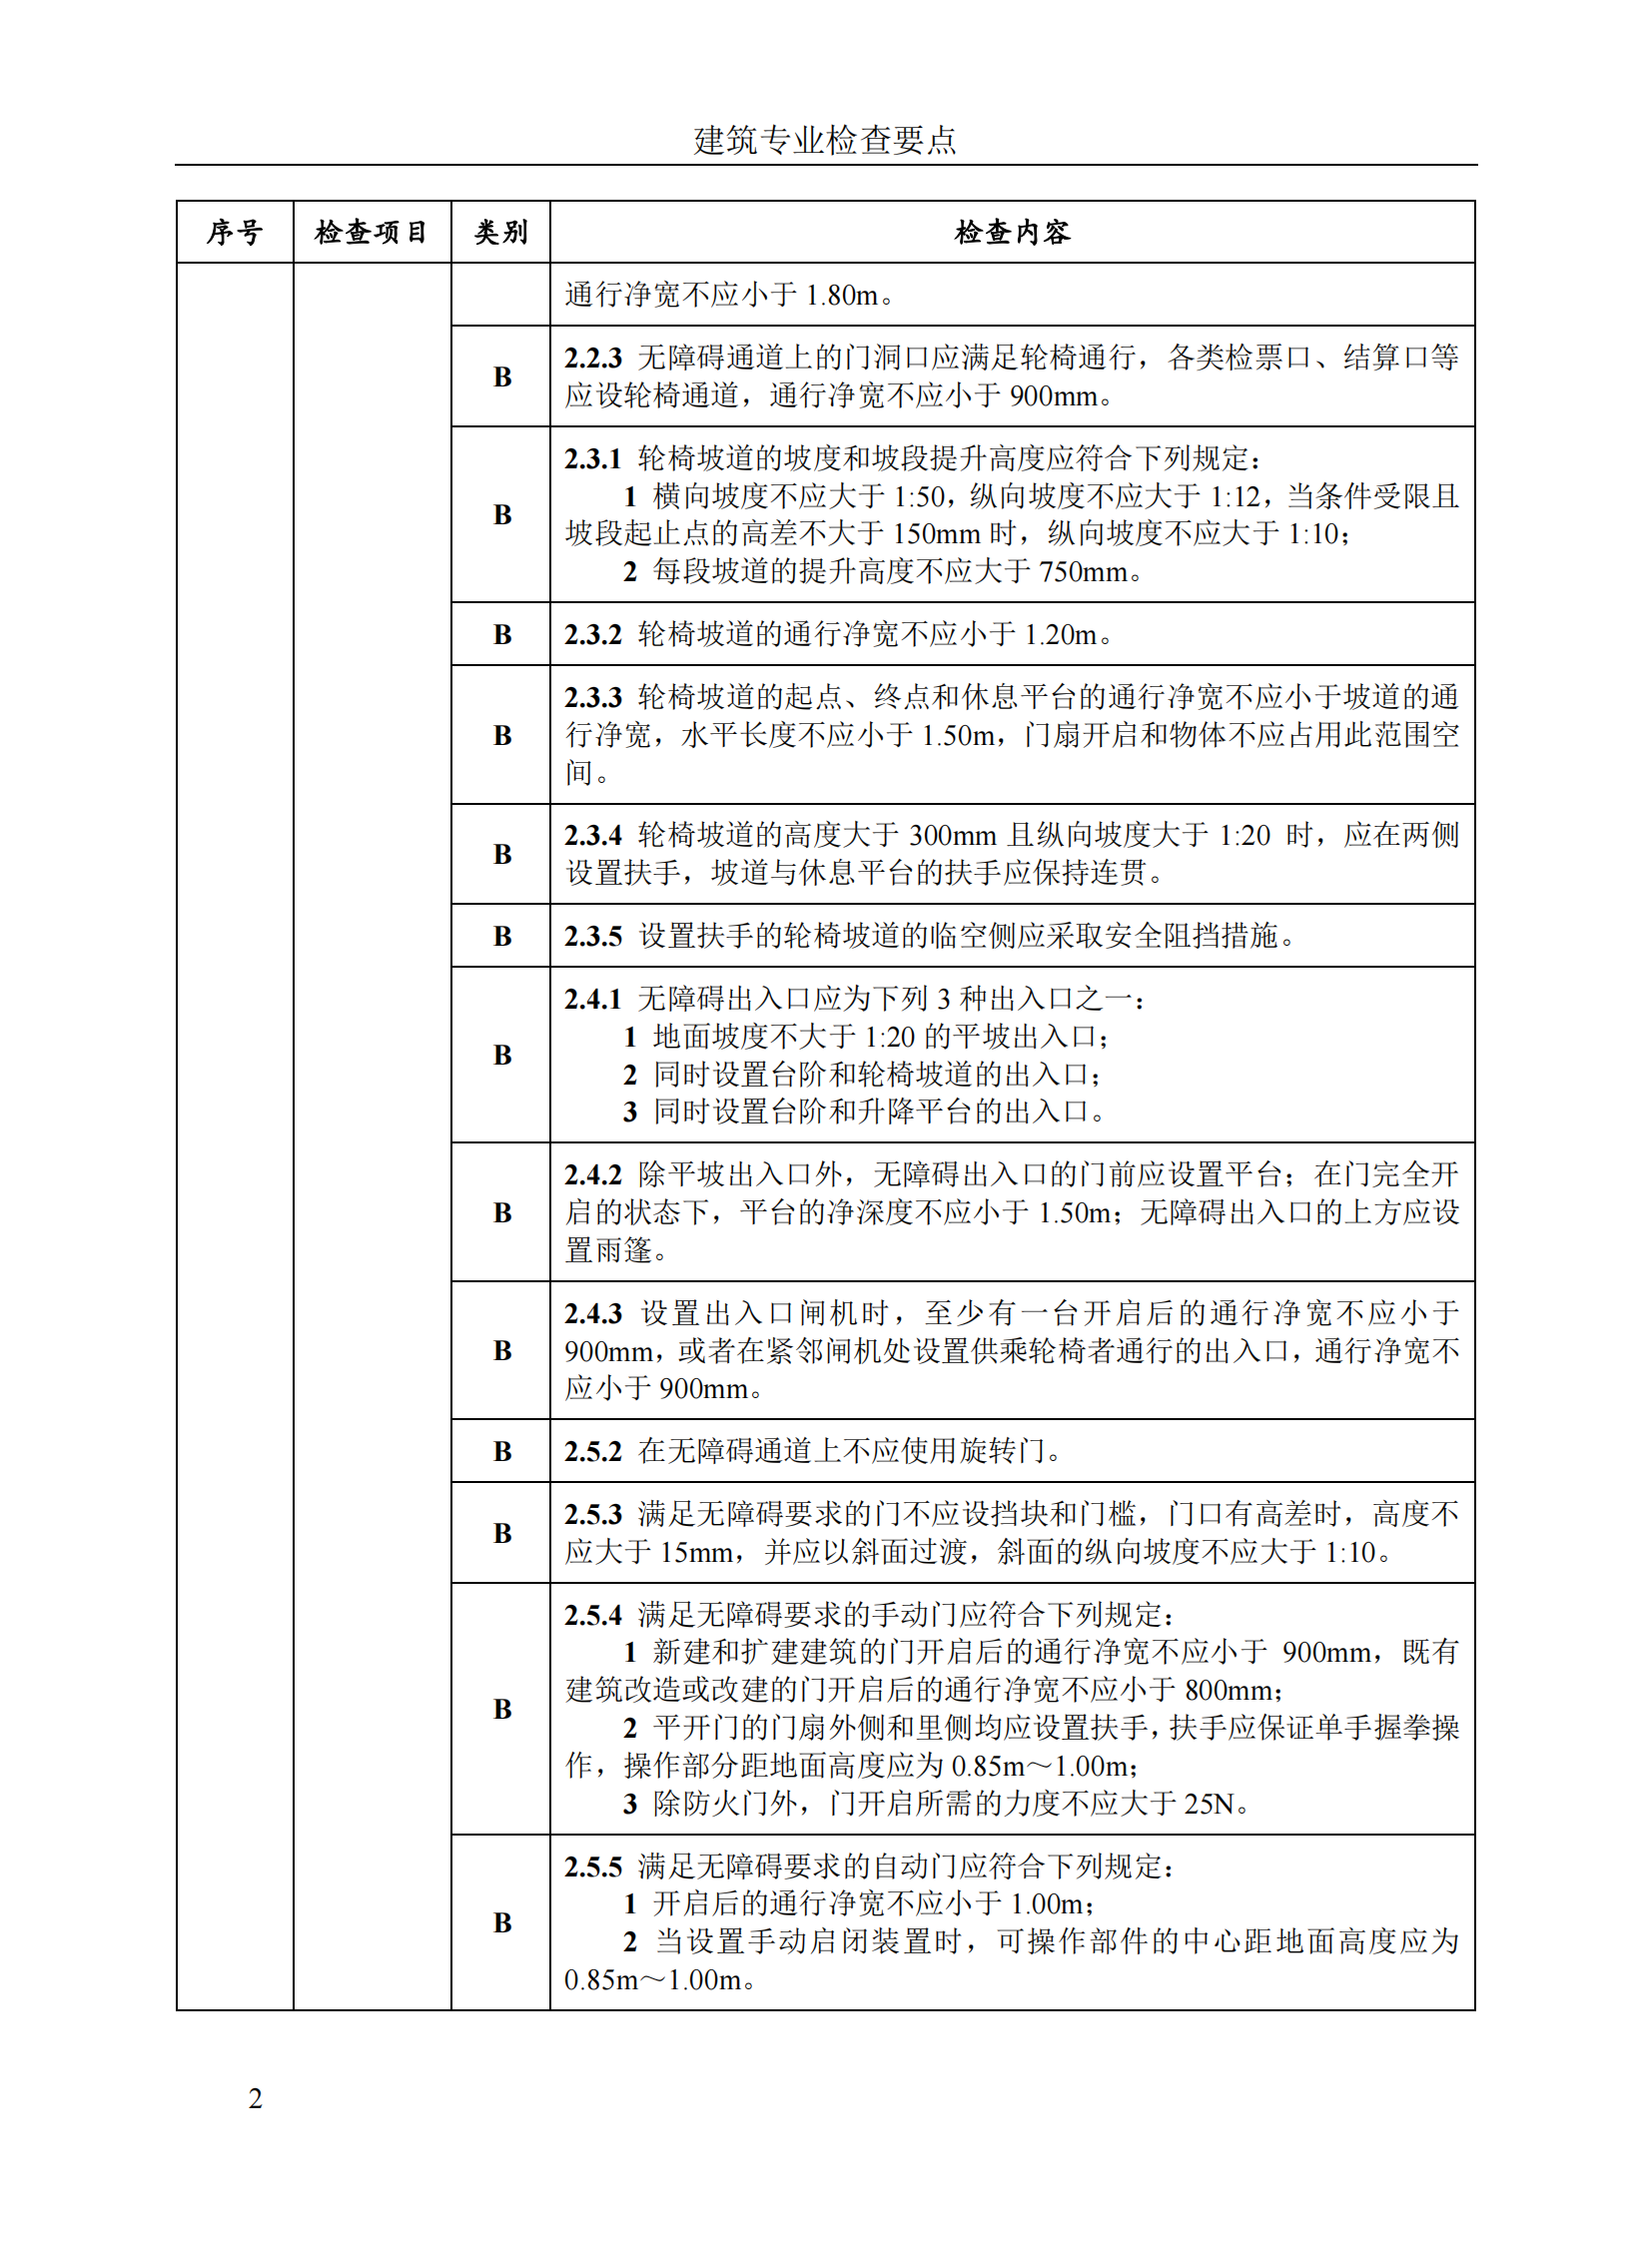 北京市房屋建筑工程施工图事后检查要点（上下册）插图(8)